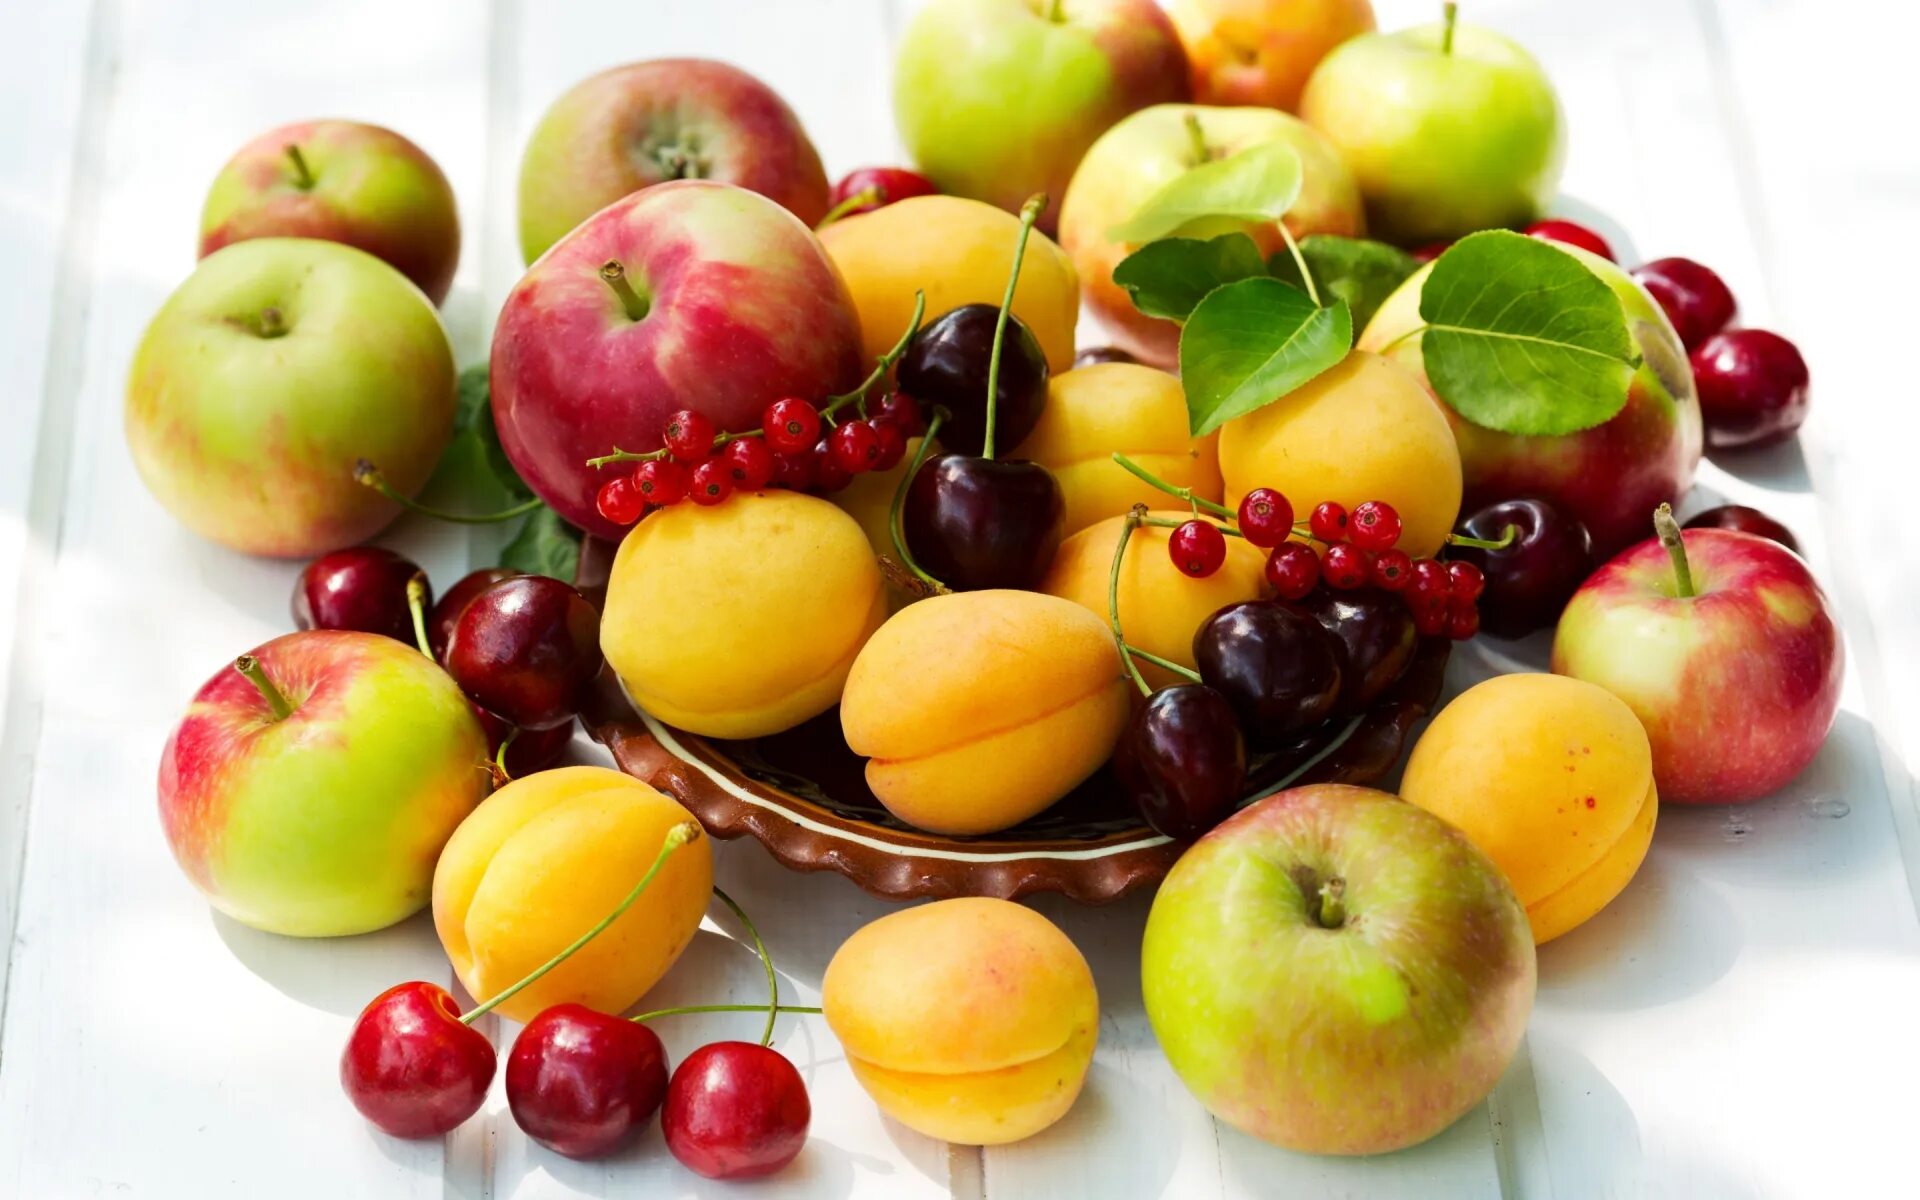 Яблоко плодовый. Абрикосы и черешня, нектарины. Фрукты и ягоды. Косточковые фрукты. Плод ягода.